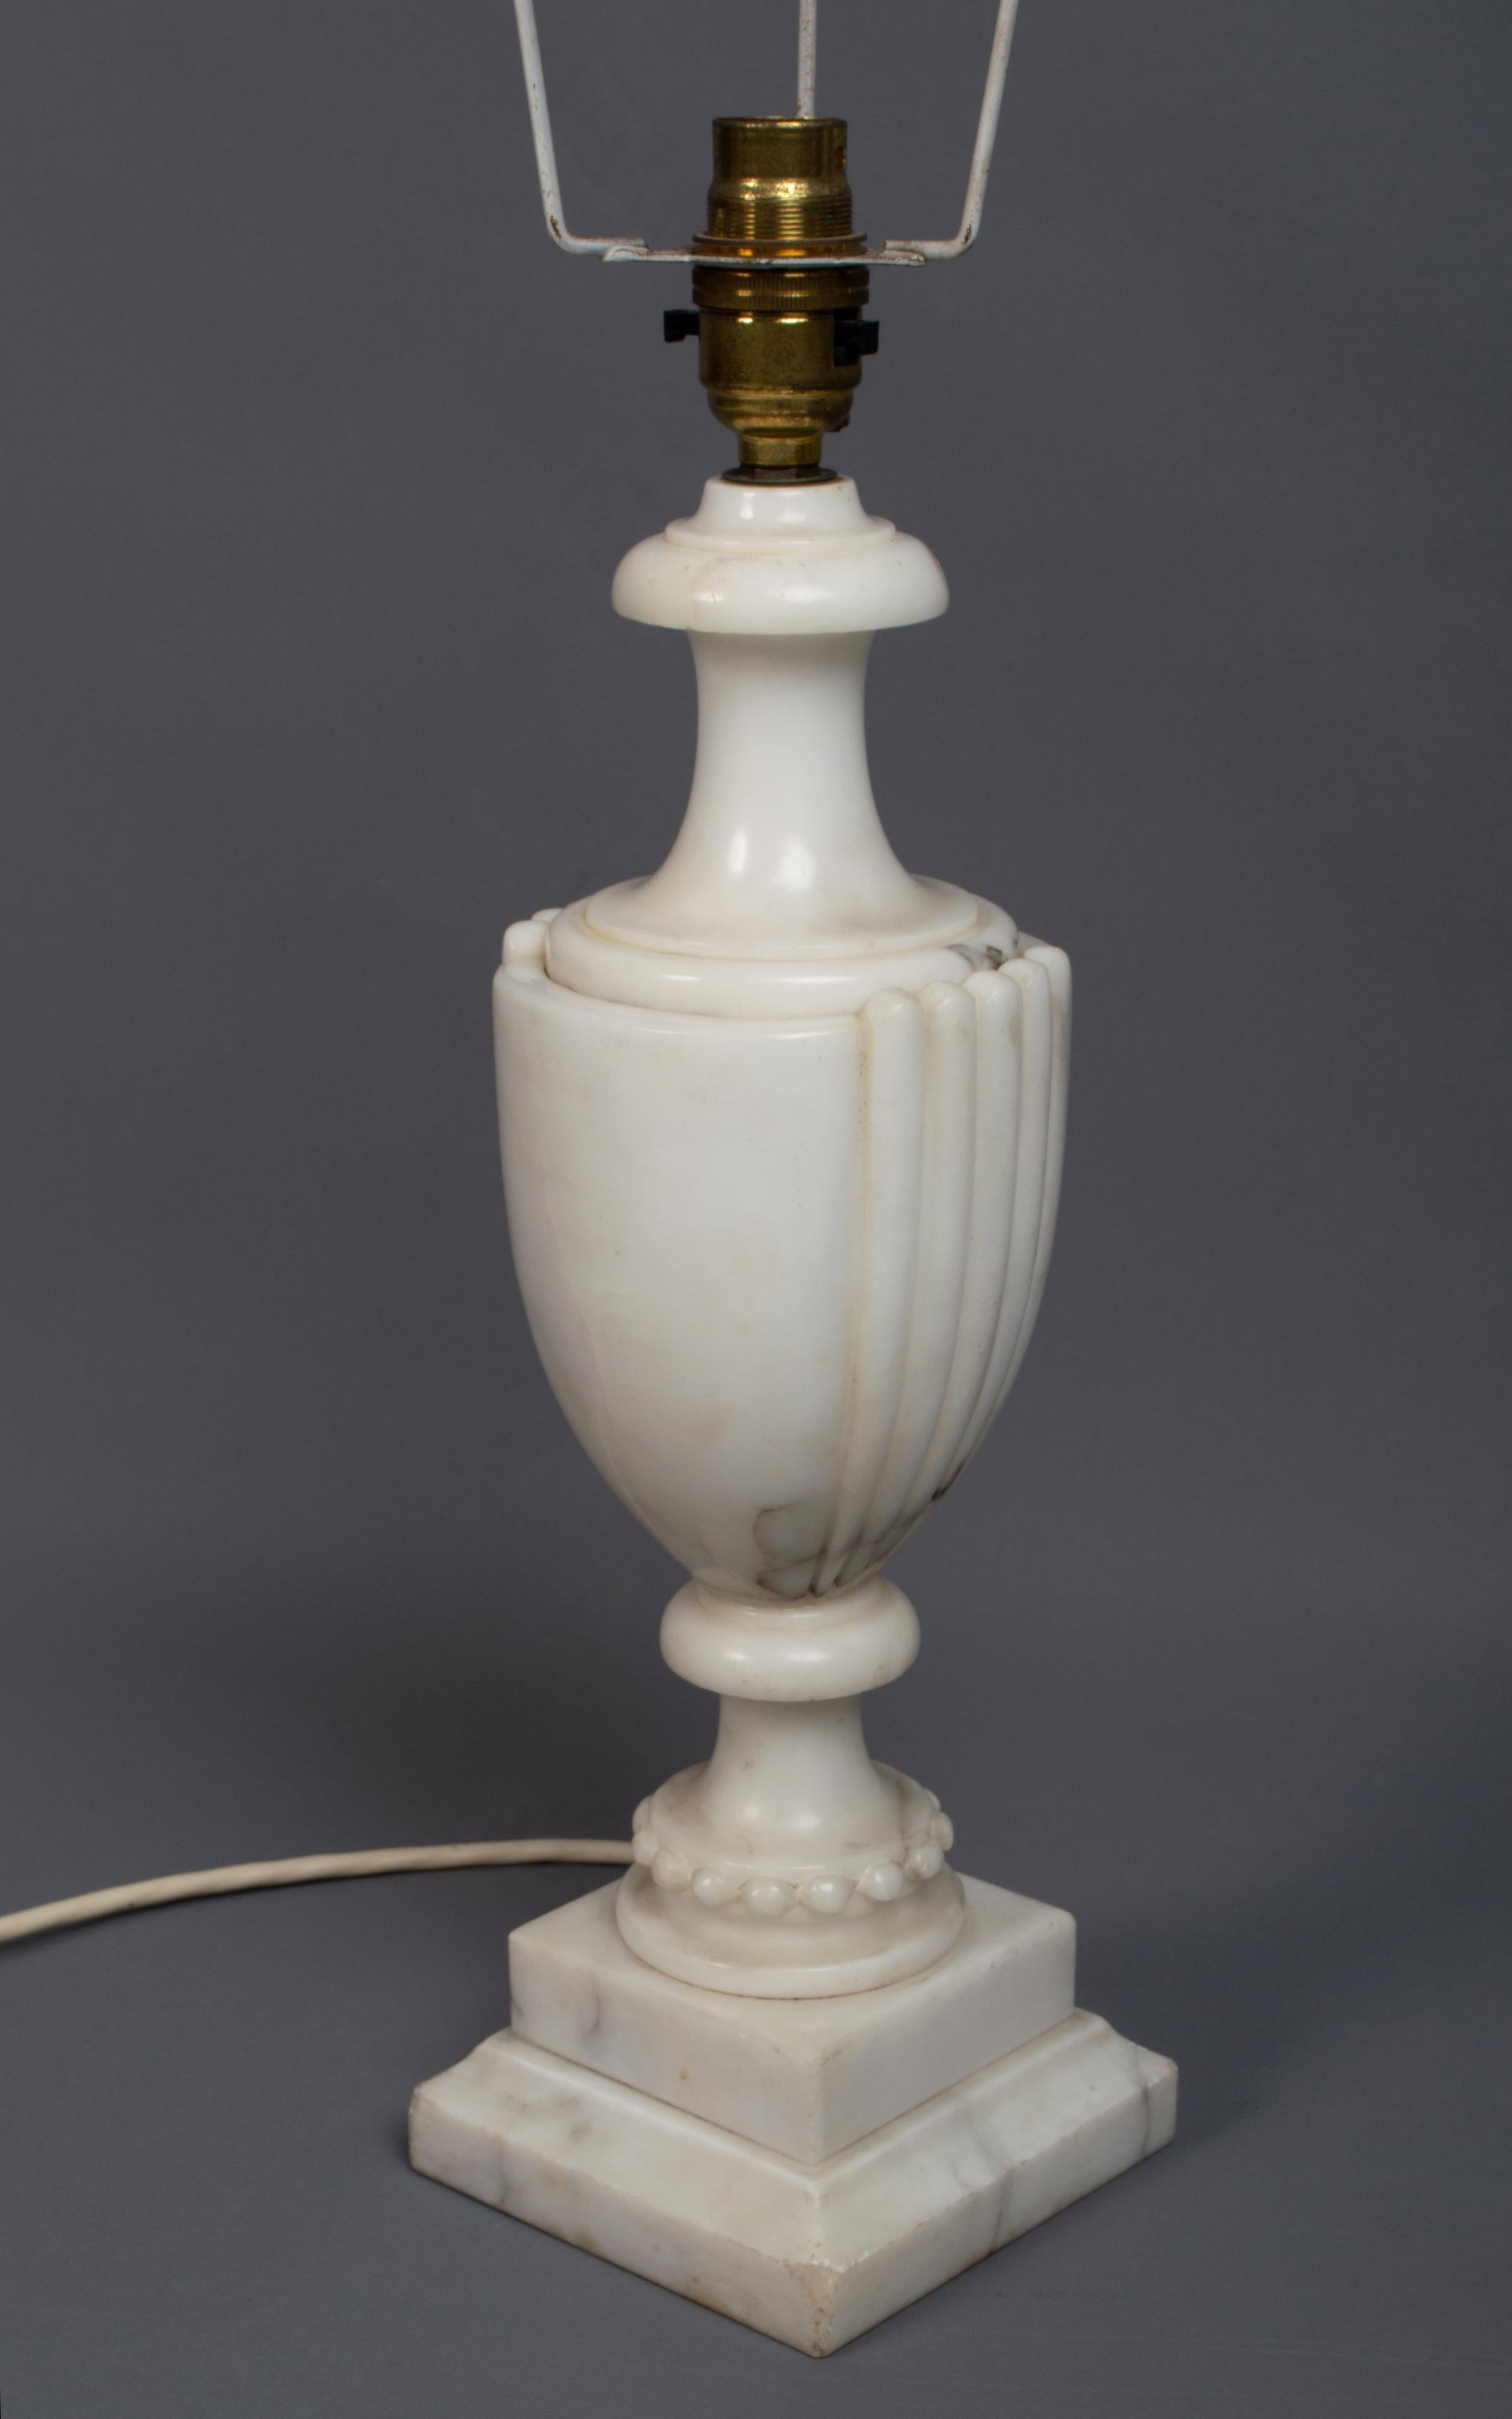 Neoklassische Tischlampe aus Marmor in Urnenform Italien, C.C. 1950

Neoklassische Tischlampe in Form einer Urne. Geäderter Marmor auf einem abgestuften quadratischen Sockel.

In sehr gutem, altersgemäßem Zustand, leichte Gebrauchsspuren an den